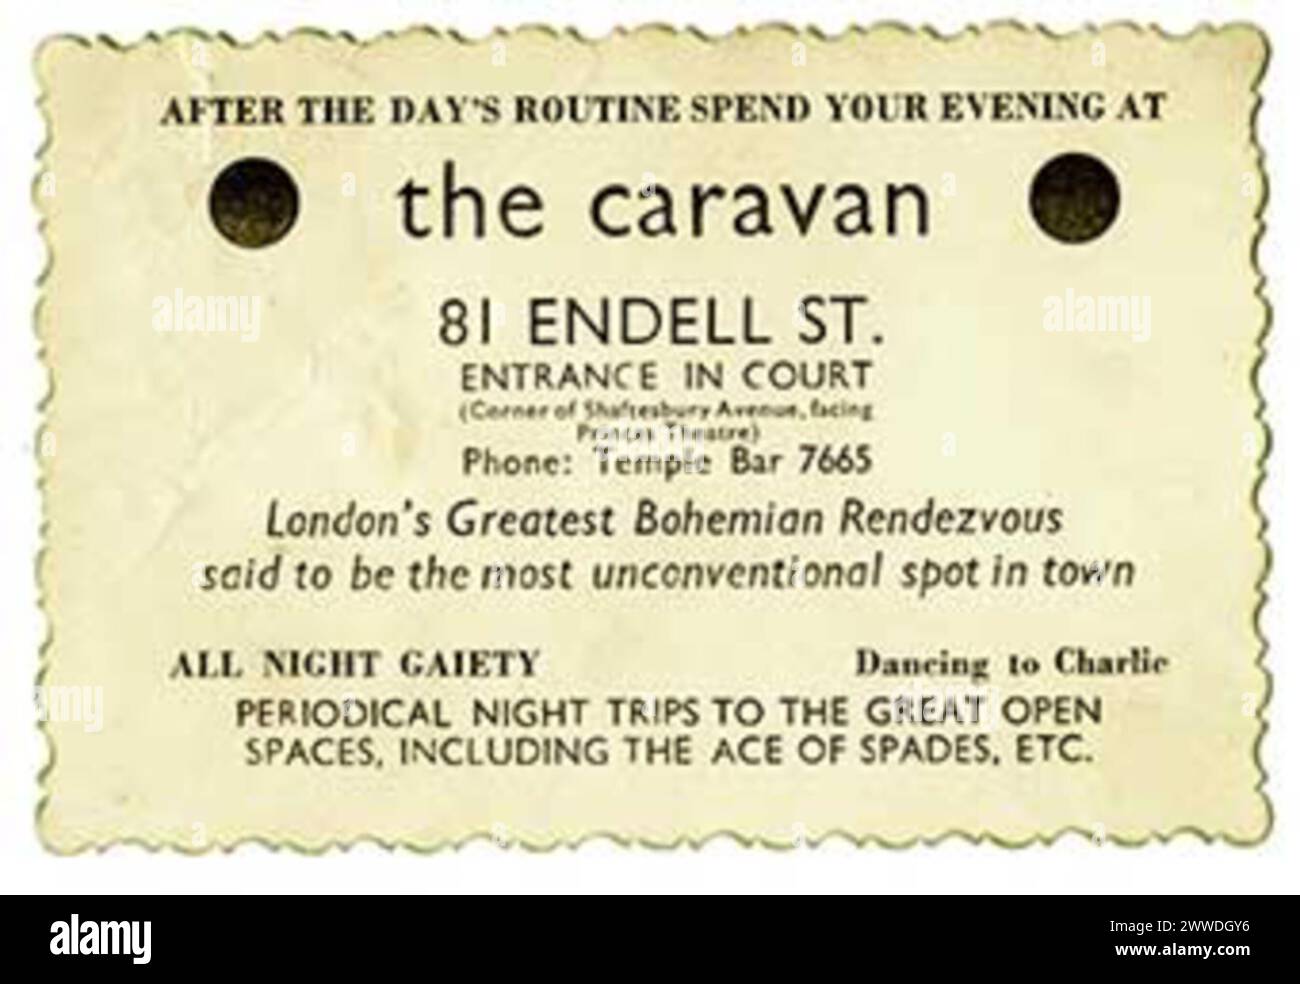 Card of the Caravan Club, Endell Street, London Catalogue Reference: MEPO 3/758 The Caravan Club era un club privato di membri perseguitato nel 1934 per essere una "casa disordinata". Il biglietto descrive lo spazio come "l'unico Rendezvous boemo di Londra detto al posto più anticonvenzionale della città", e in effetti il club ha accolto gli estranei dell'epoca, in un'epoca in cui l'omosessualità era ancora criminalizzata. Al prezzo di 1 scellino per i membri, o 1s 6d sulla porta, si può godere di "gaiety tutta la notte" ballando con la musica di Charlie, il fisarmonicista del club. lgbt, lgbthistory Foto Stock